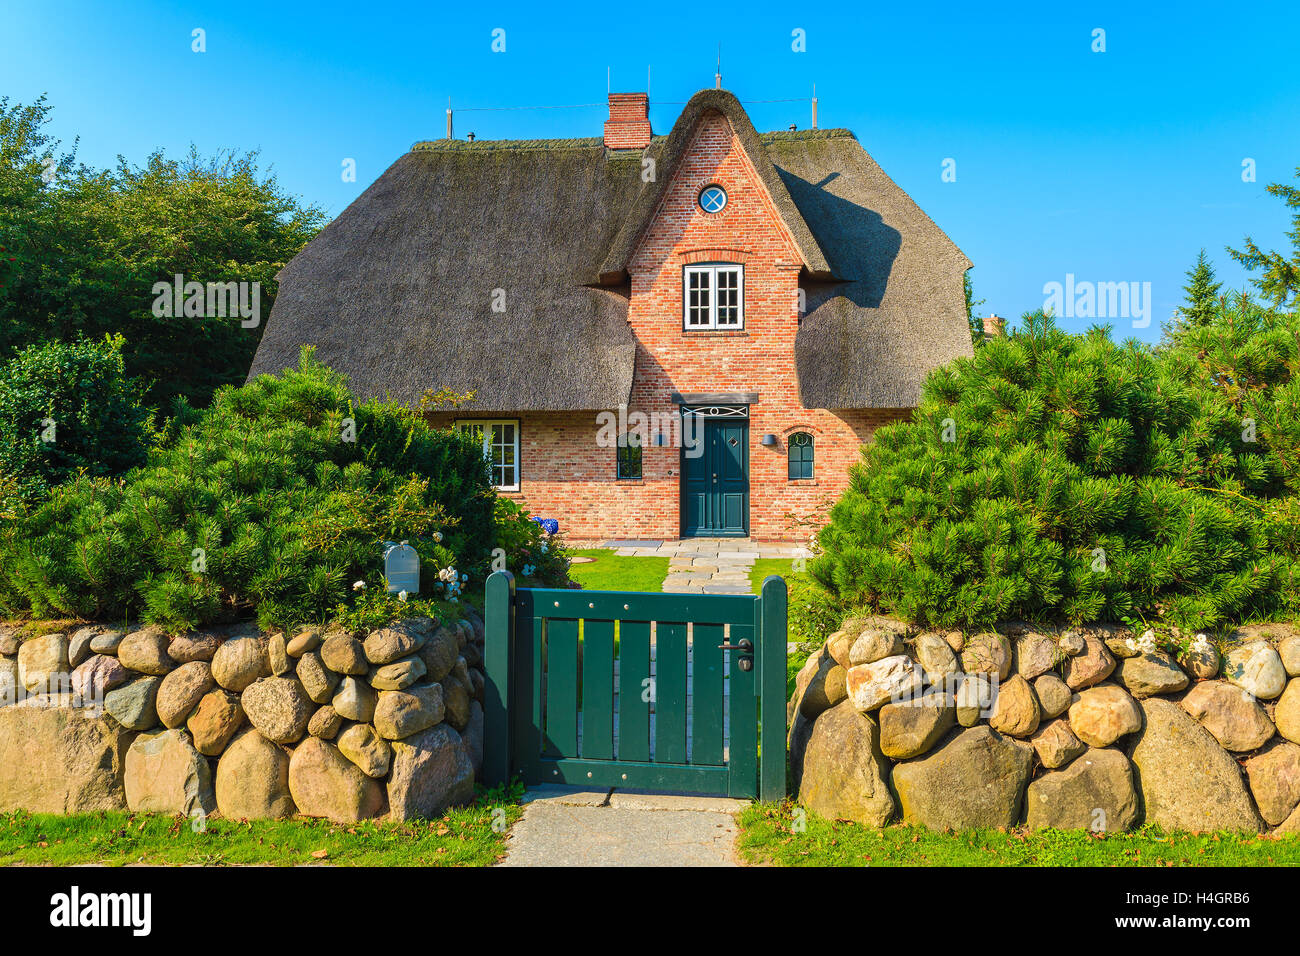 Maison en brique rouge typique frison avec toit de paille à Kampen village sur l'île de Sylt, Allemagne Banque D'Images